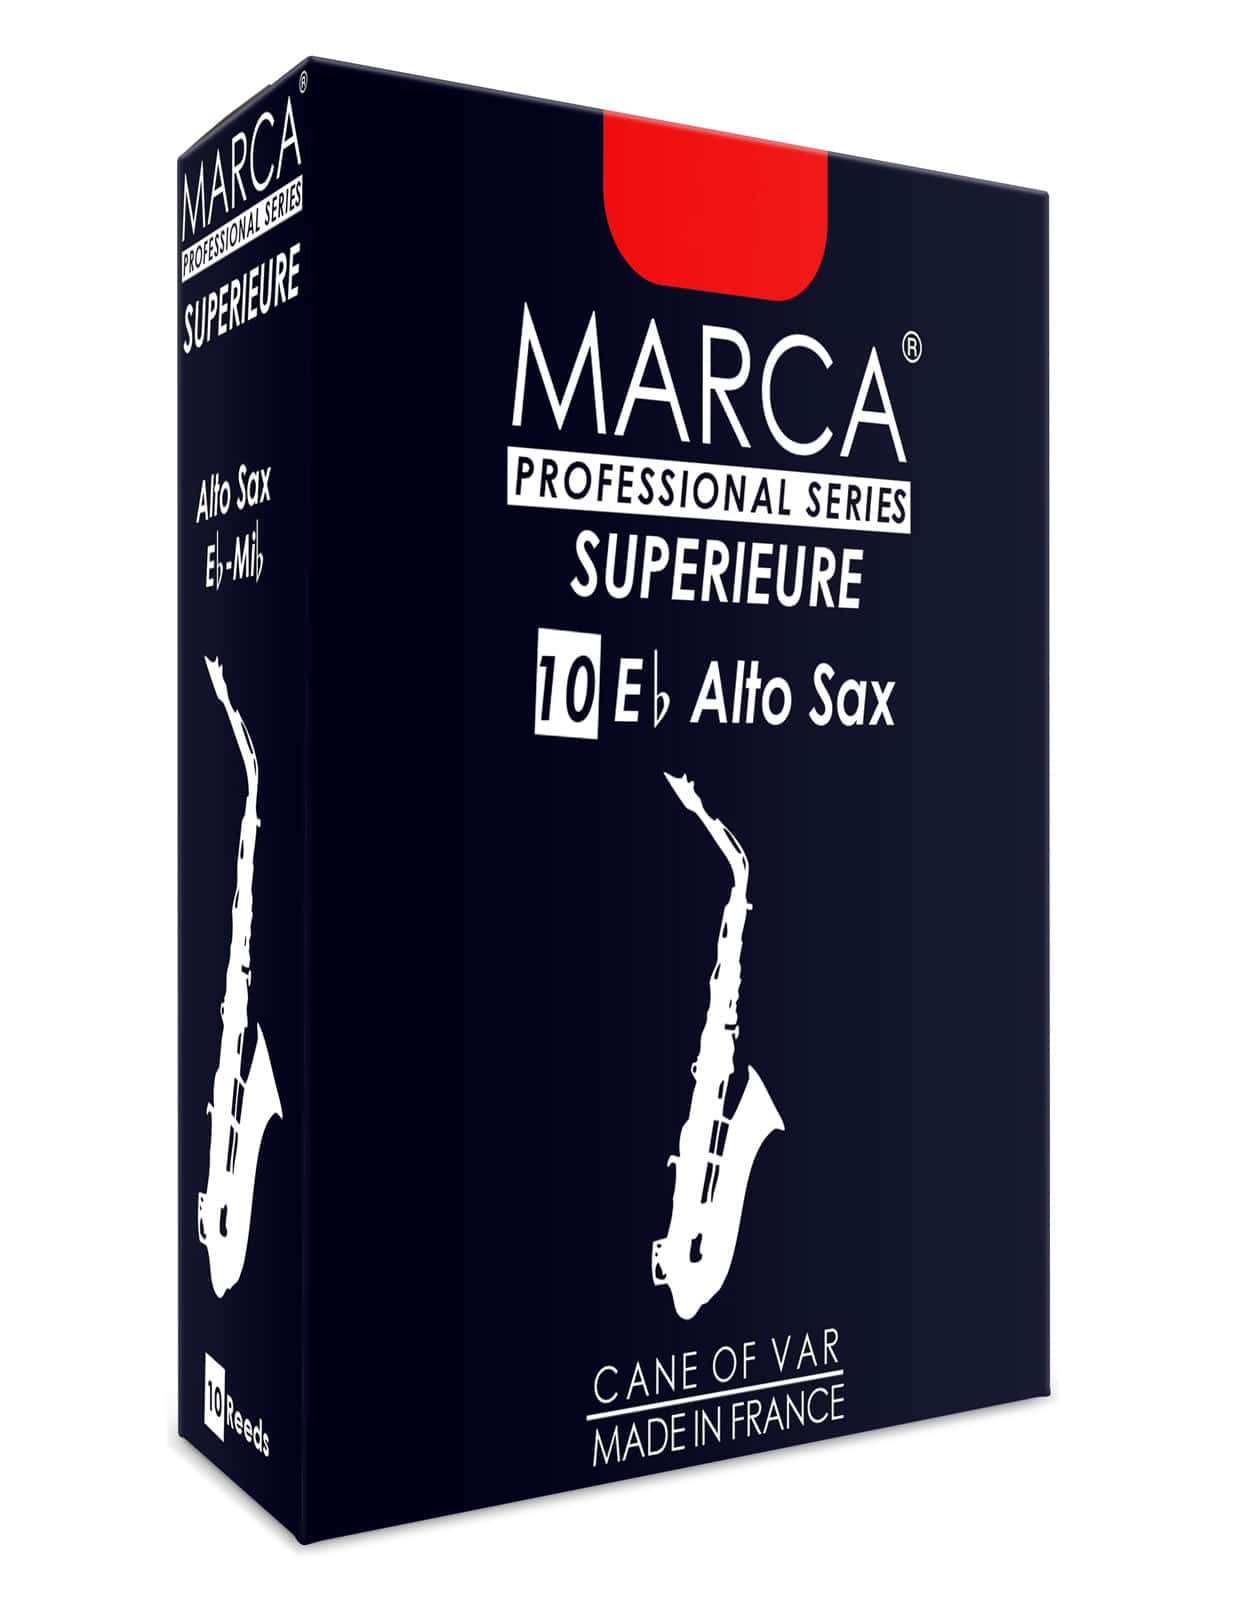 MARCA CAA SUPERIEURE SAXFONO ALTO 3